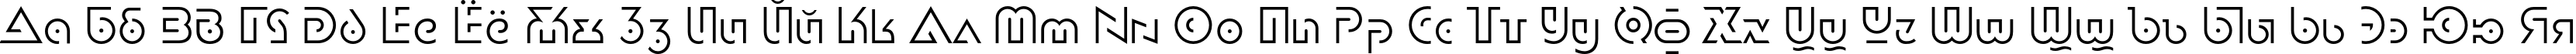 Пример написания русского алфавита шрифтом DublonLight